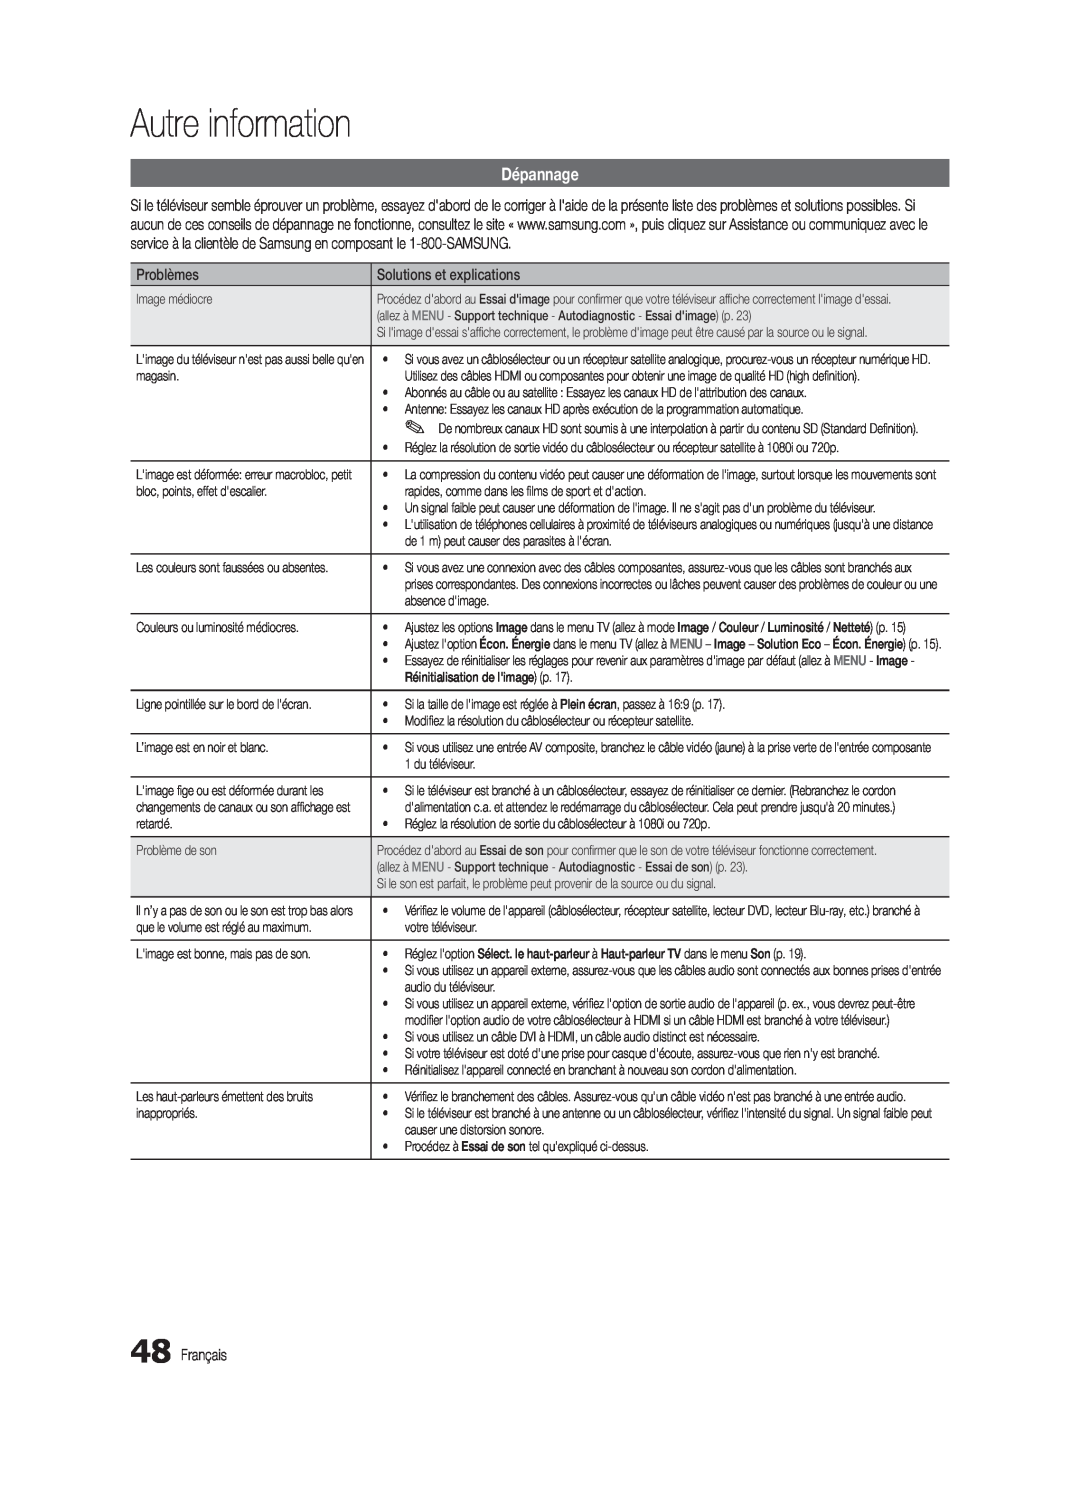 Samsung BN68-03004B-02, UC5000-ZC user manual Dépannage, Autre information, Problèmes, Solutions et explications, Français 